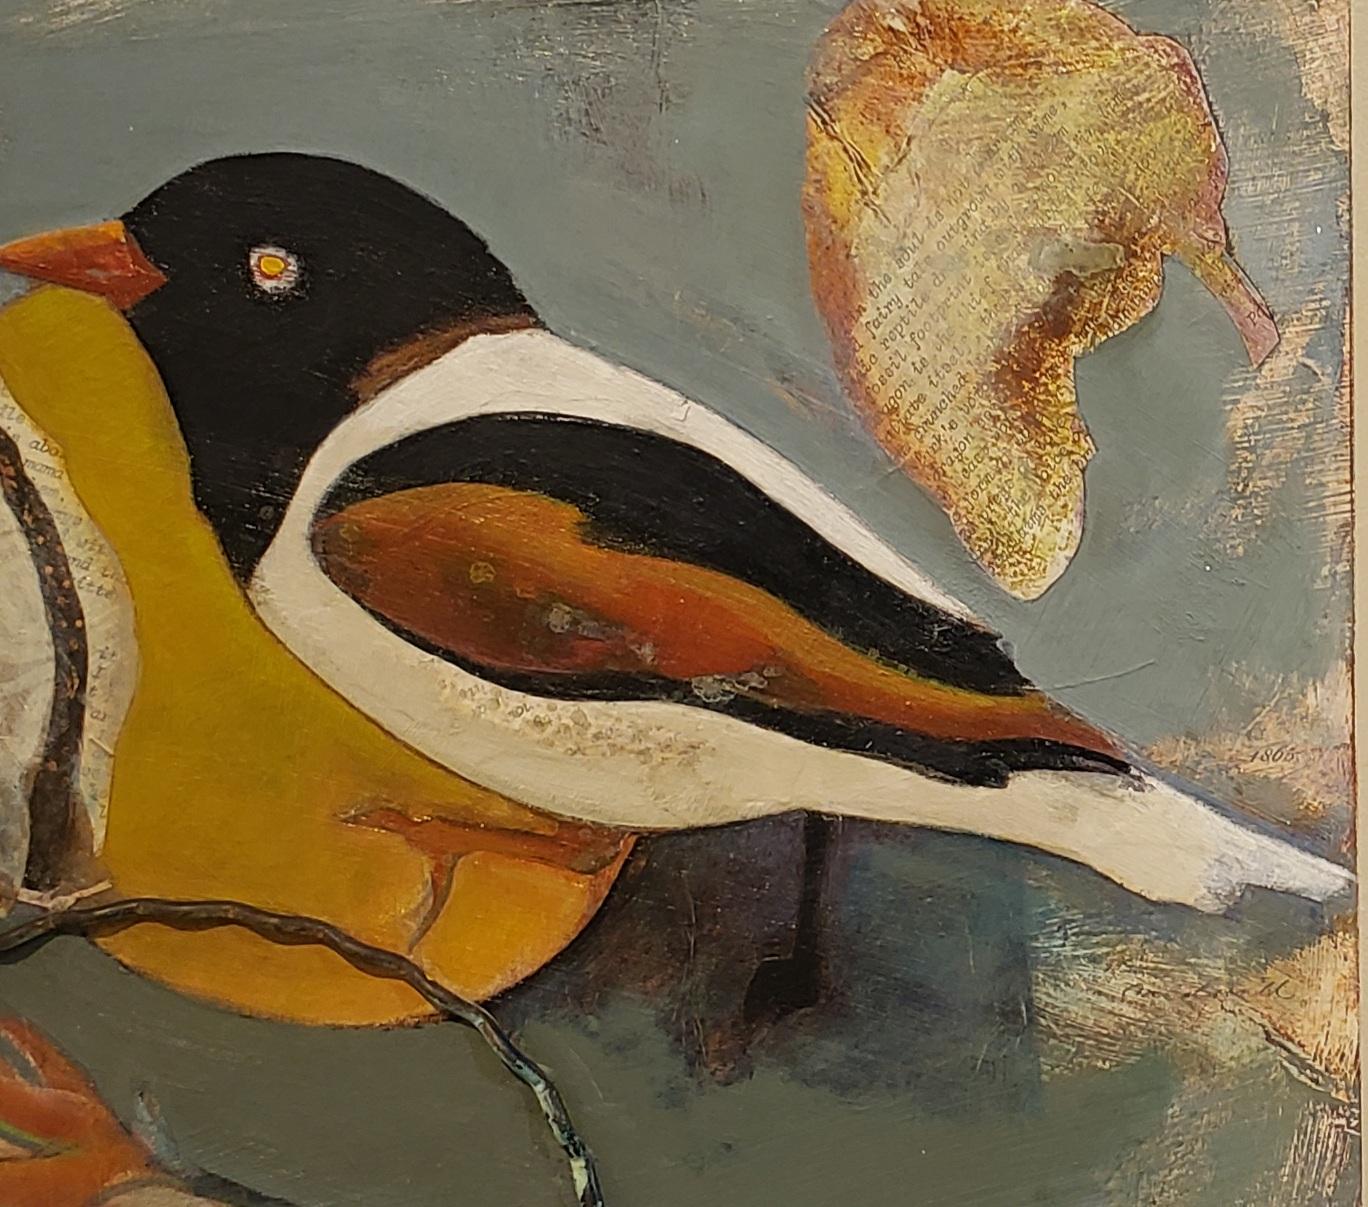 Perched stammt von Anne Embree, die für ihre skurrilen Tierbilder bekannt ist. Perched konzentriert sich auf den Vogel und die ihn umgebenden Objekte Perched  ist 16 x 20 ungerahmt und 21 x 25 gerahmt. Anne Embree wurde 1946 geboren und verstarb